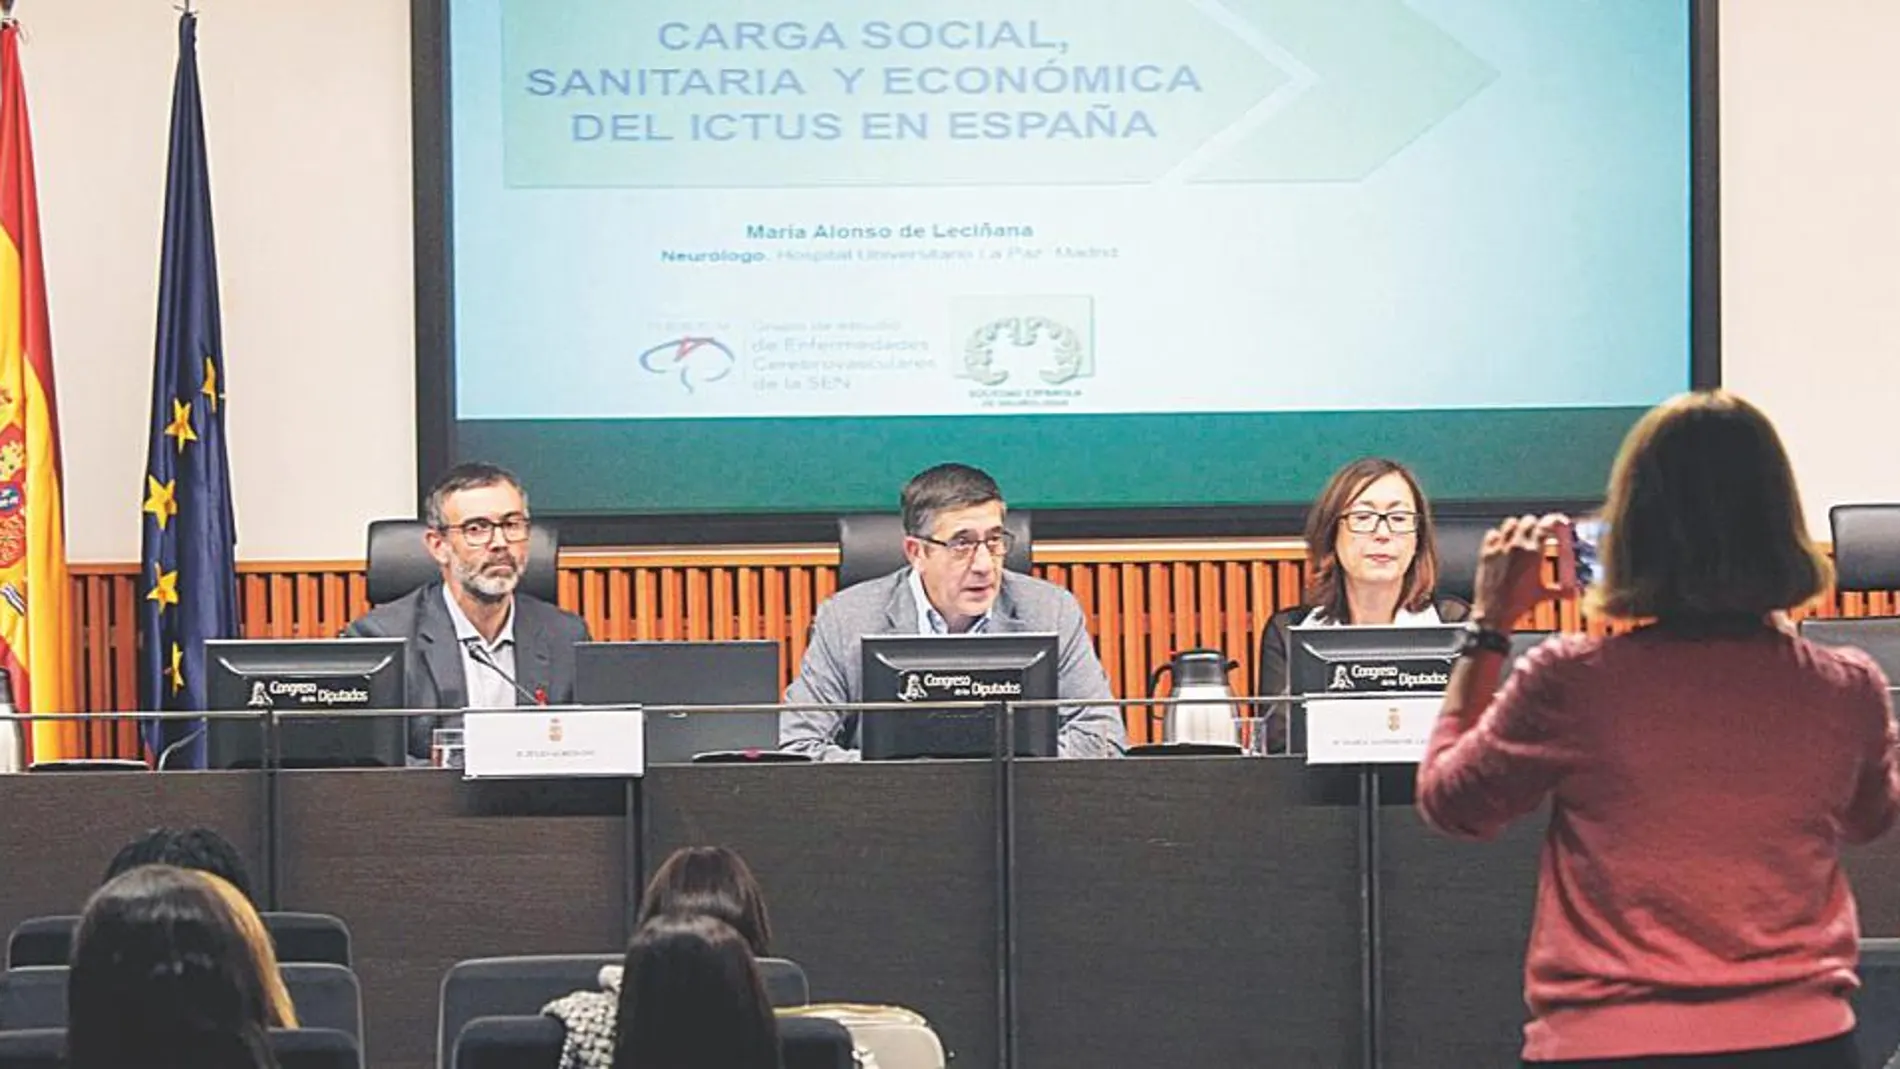 La presentación del informe, llevada a cabo por Julio Agredano, Patxi López y María Alonso de Leciñana, tuvo lugar en el Congreso